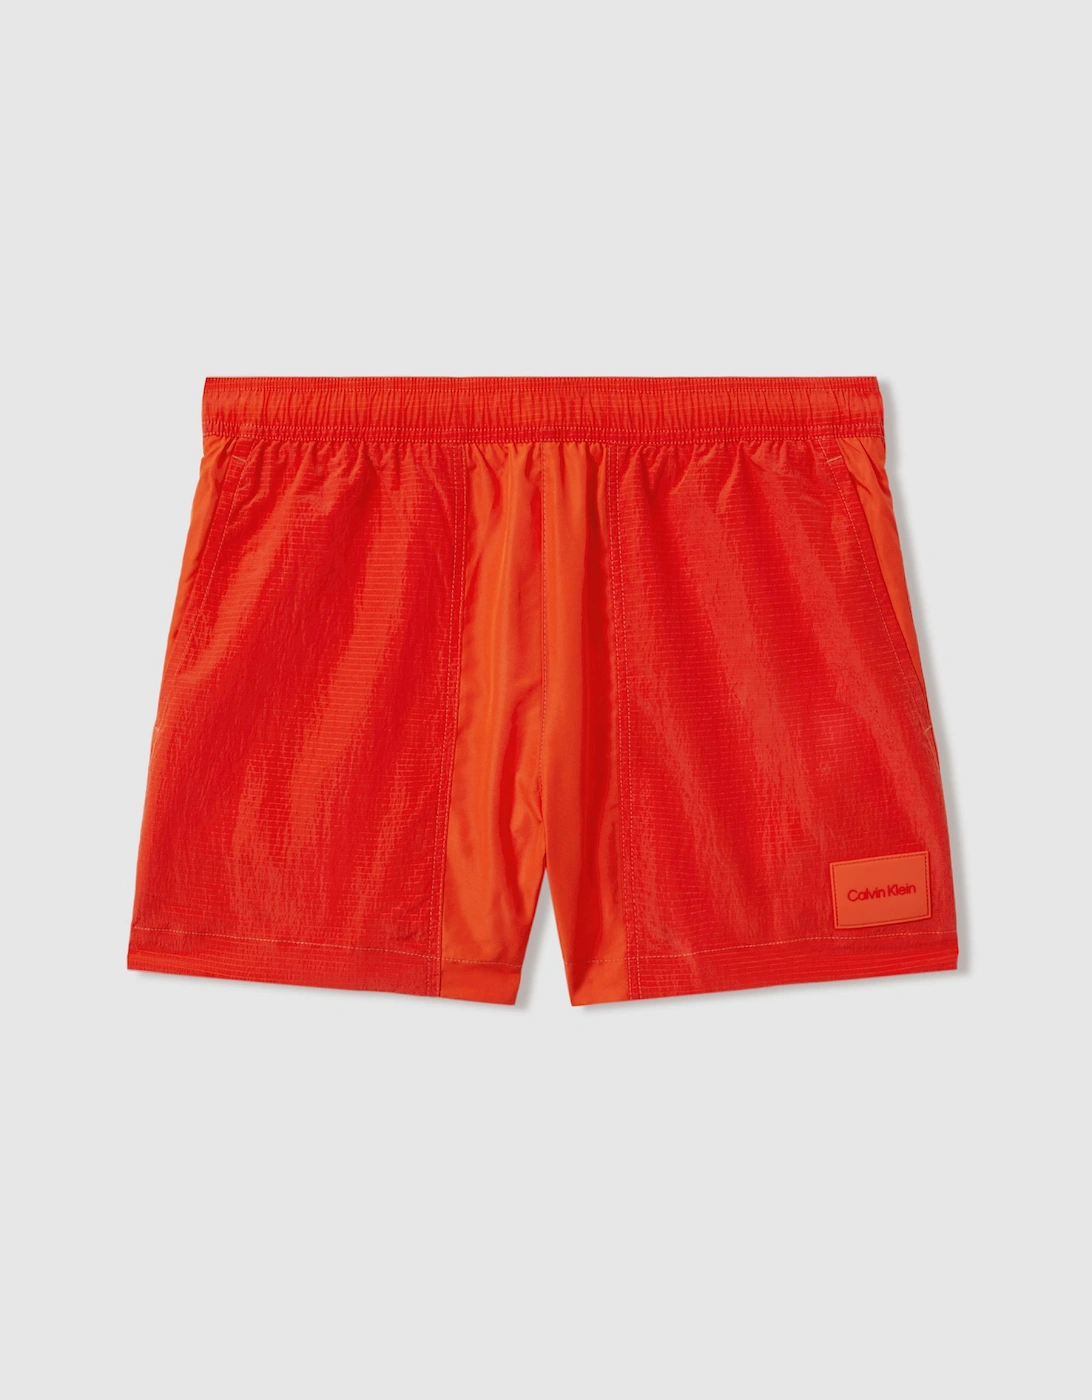 Calvin Klein Underwear Drawstring Swim Shorts, 2 of 1